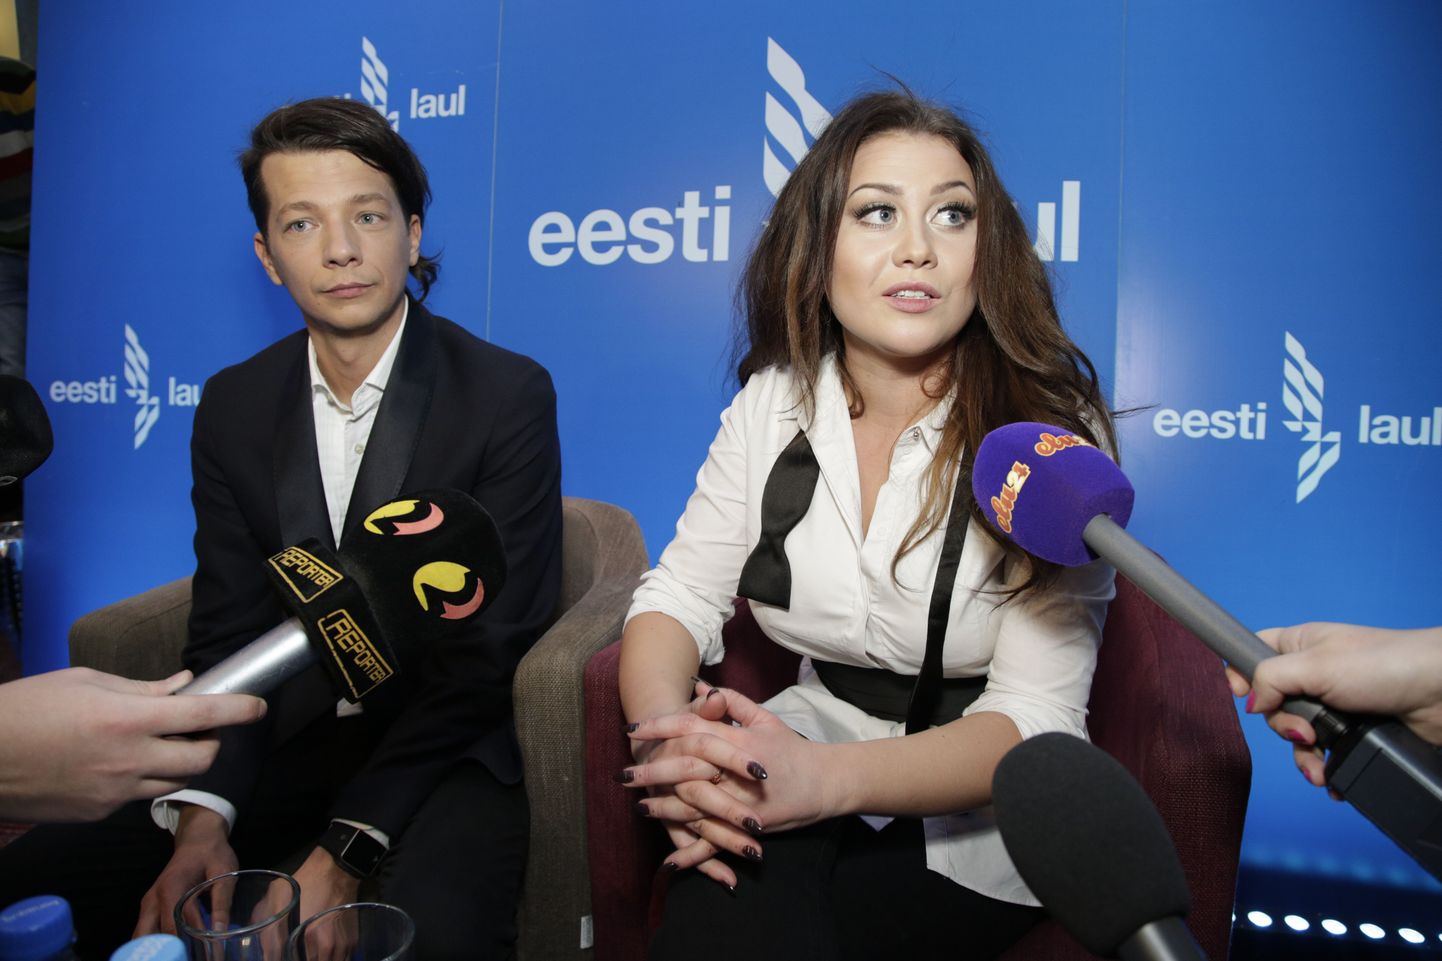 Eesti Laul 2015 finaali võitjad Elina Born ja Stig Rästa